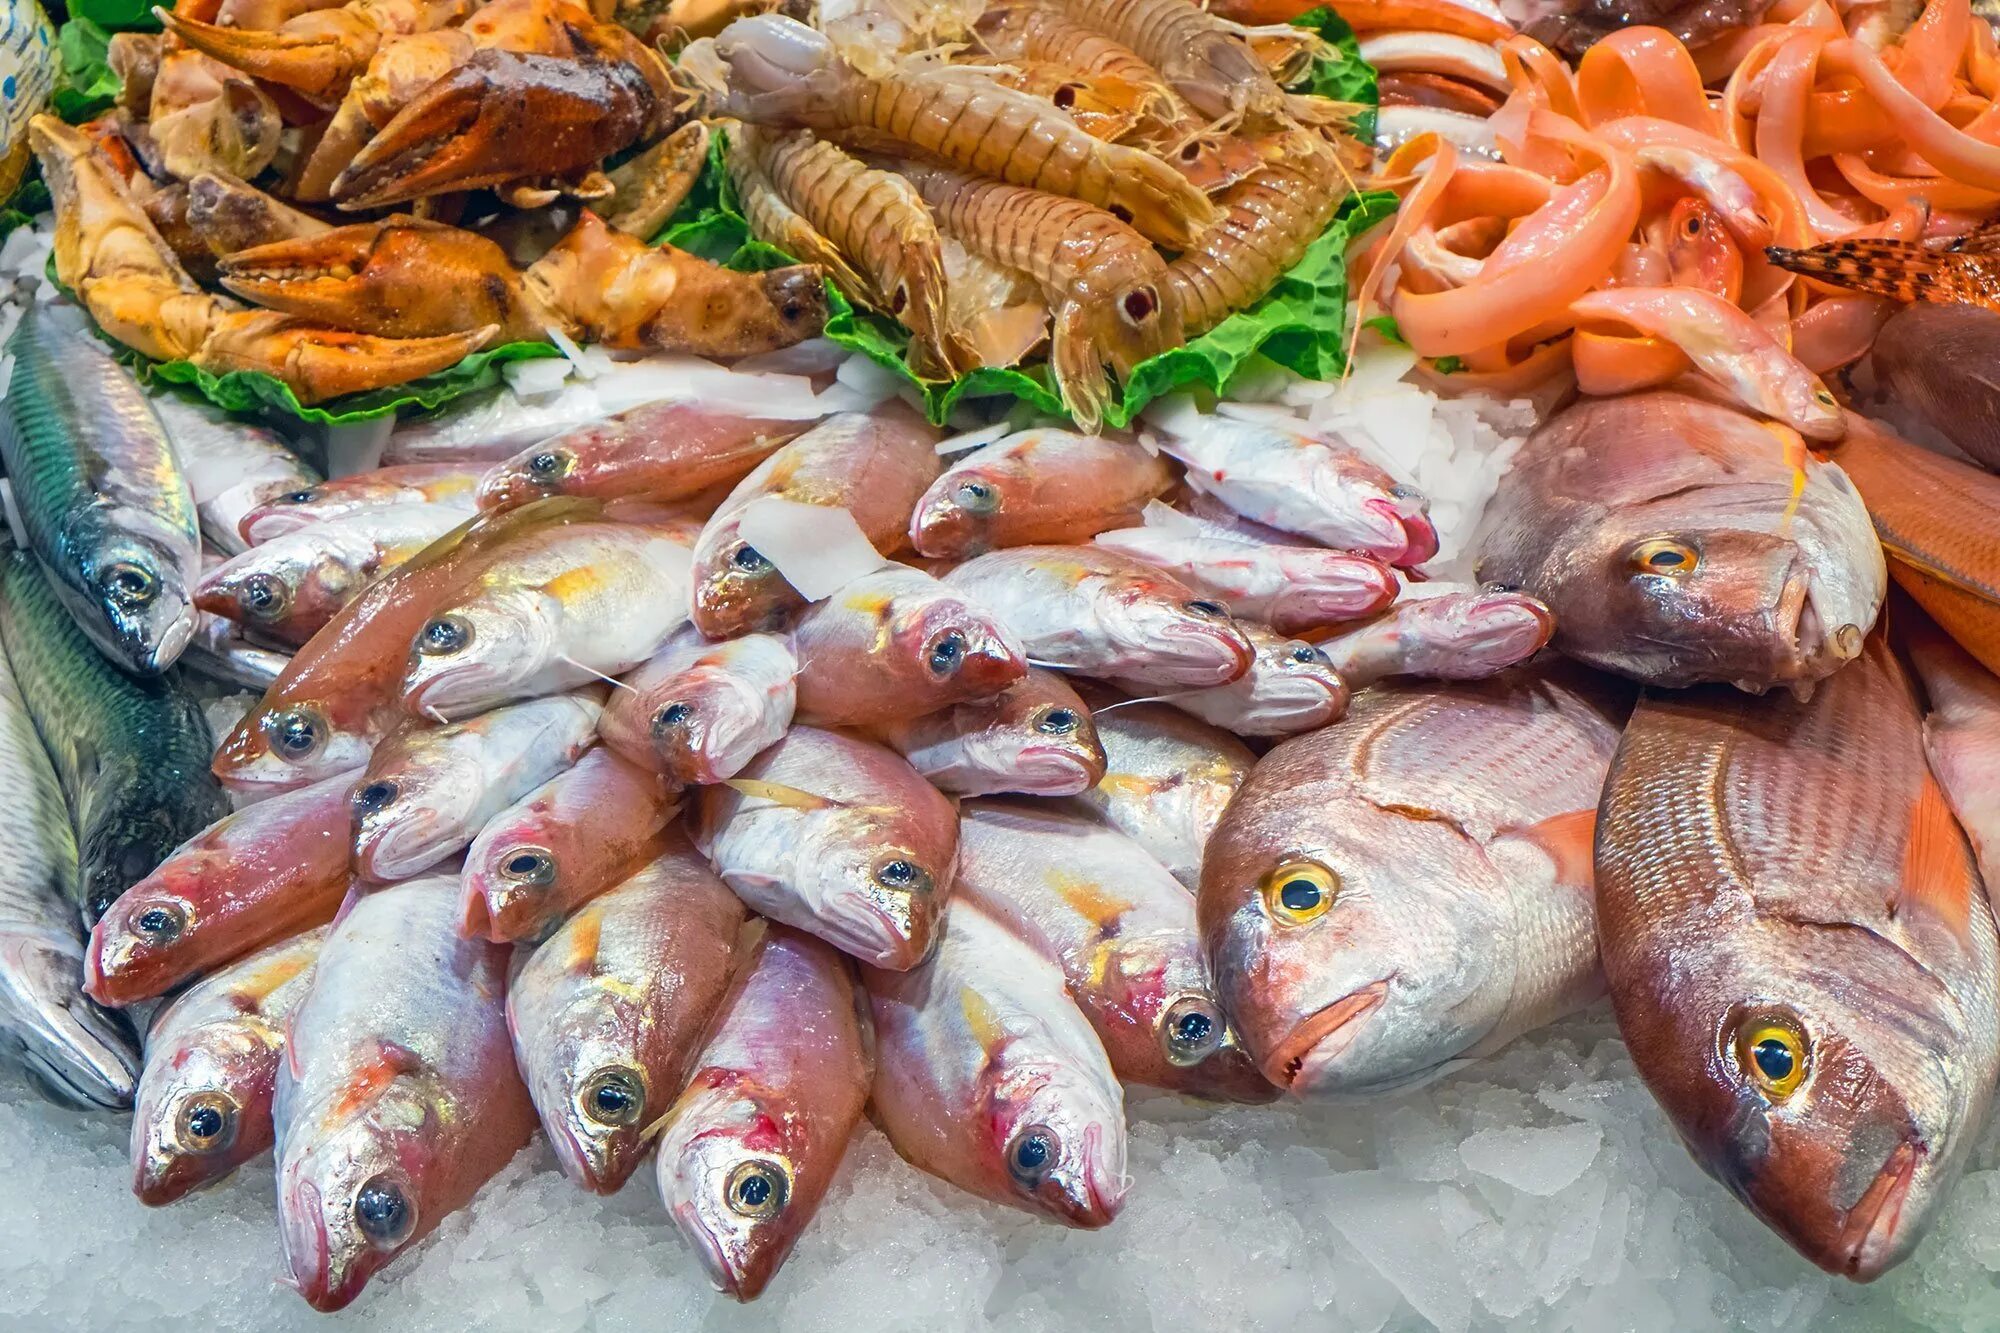 Купить рыбу дорого. Рыба на рынке. Рыба на прилавке. Морская рыба на рынке. Ассортимент морской рыбы на рынках.